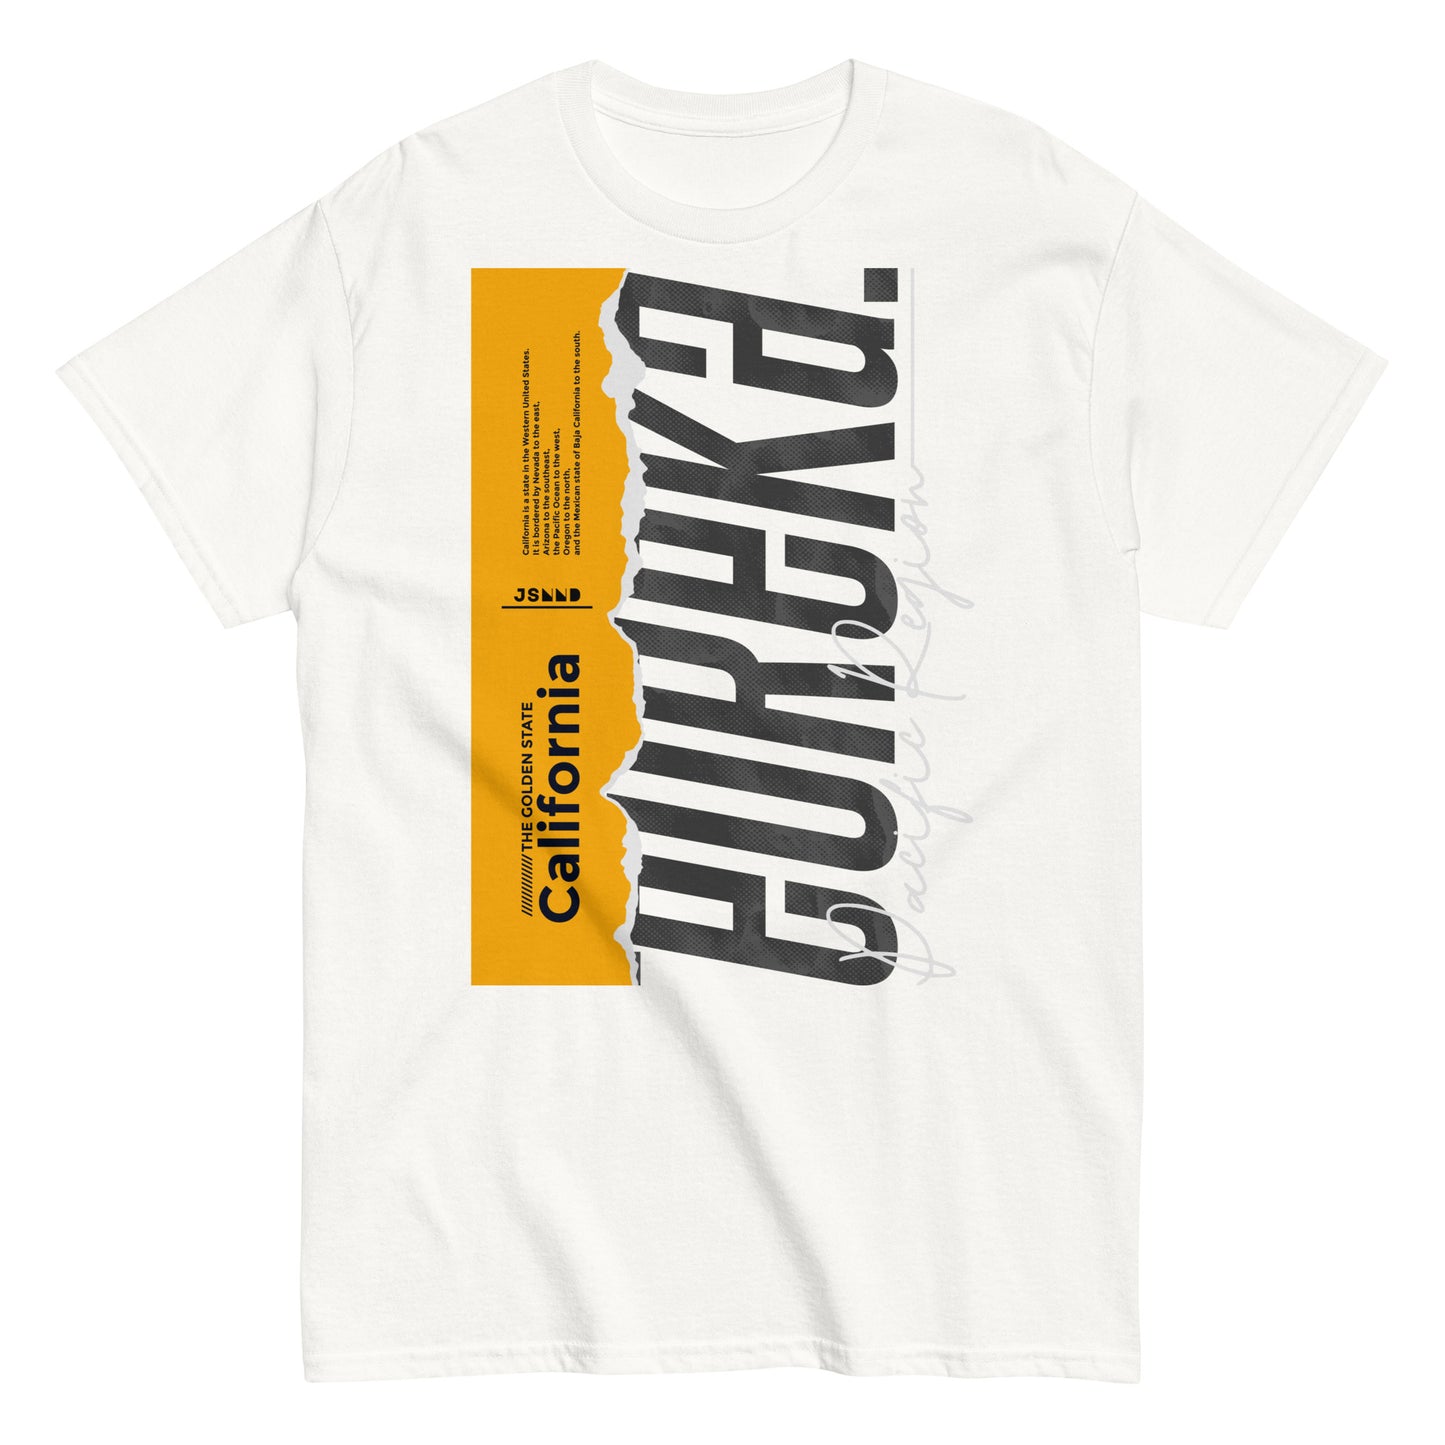 Golden state California T-shirt